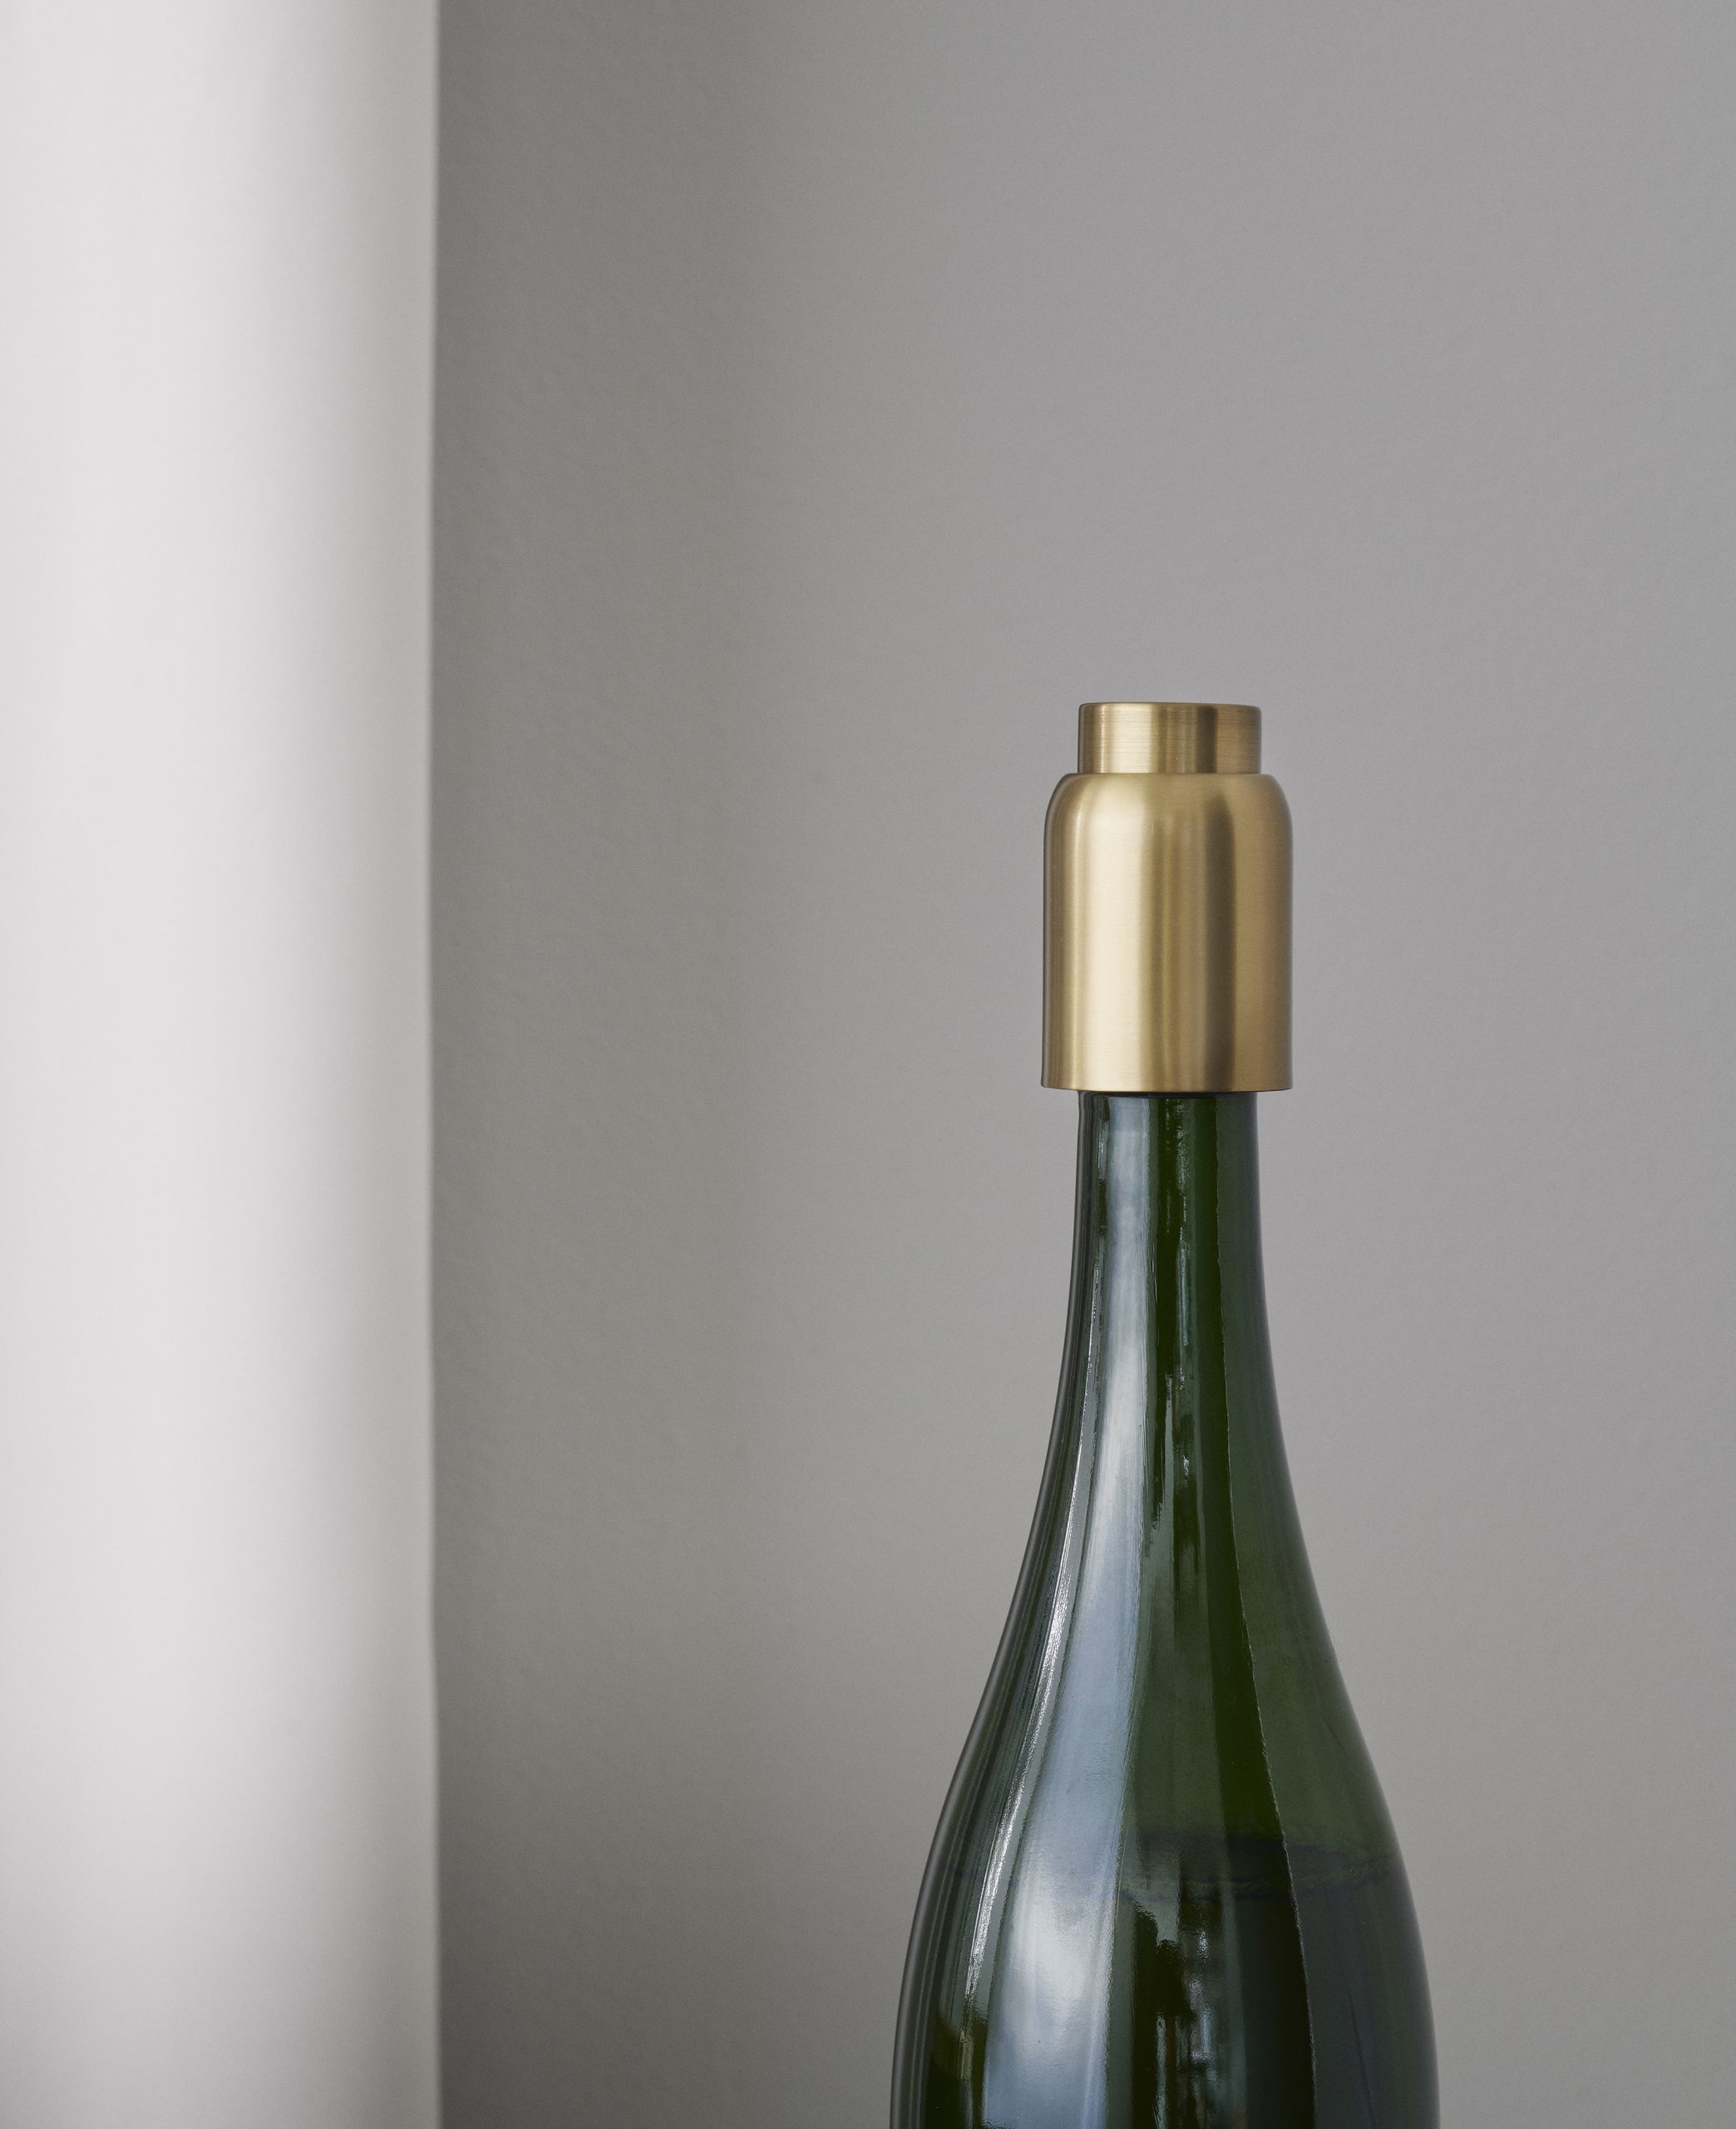 Collar bottle stopper by Debiasi Sandri designed for Stelton